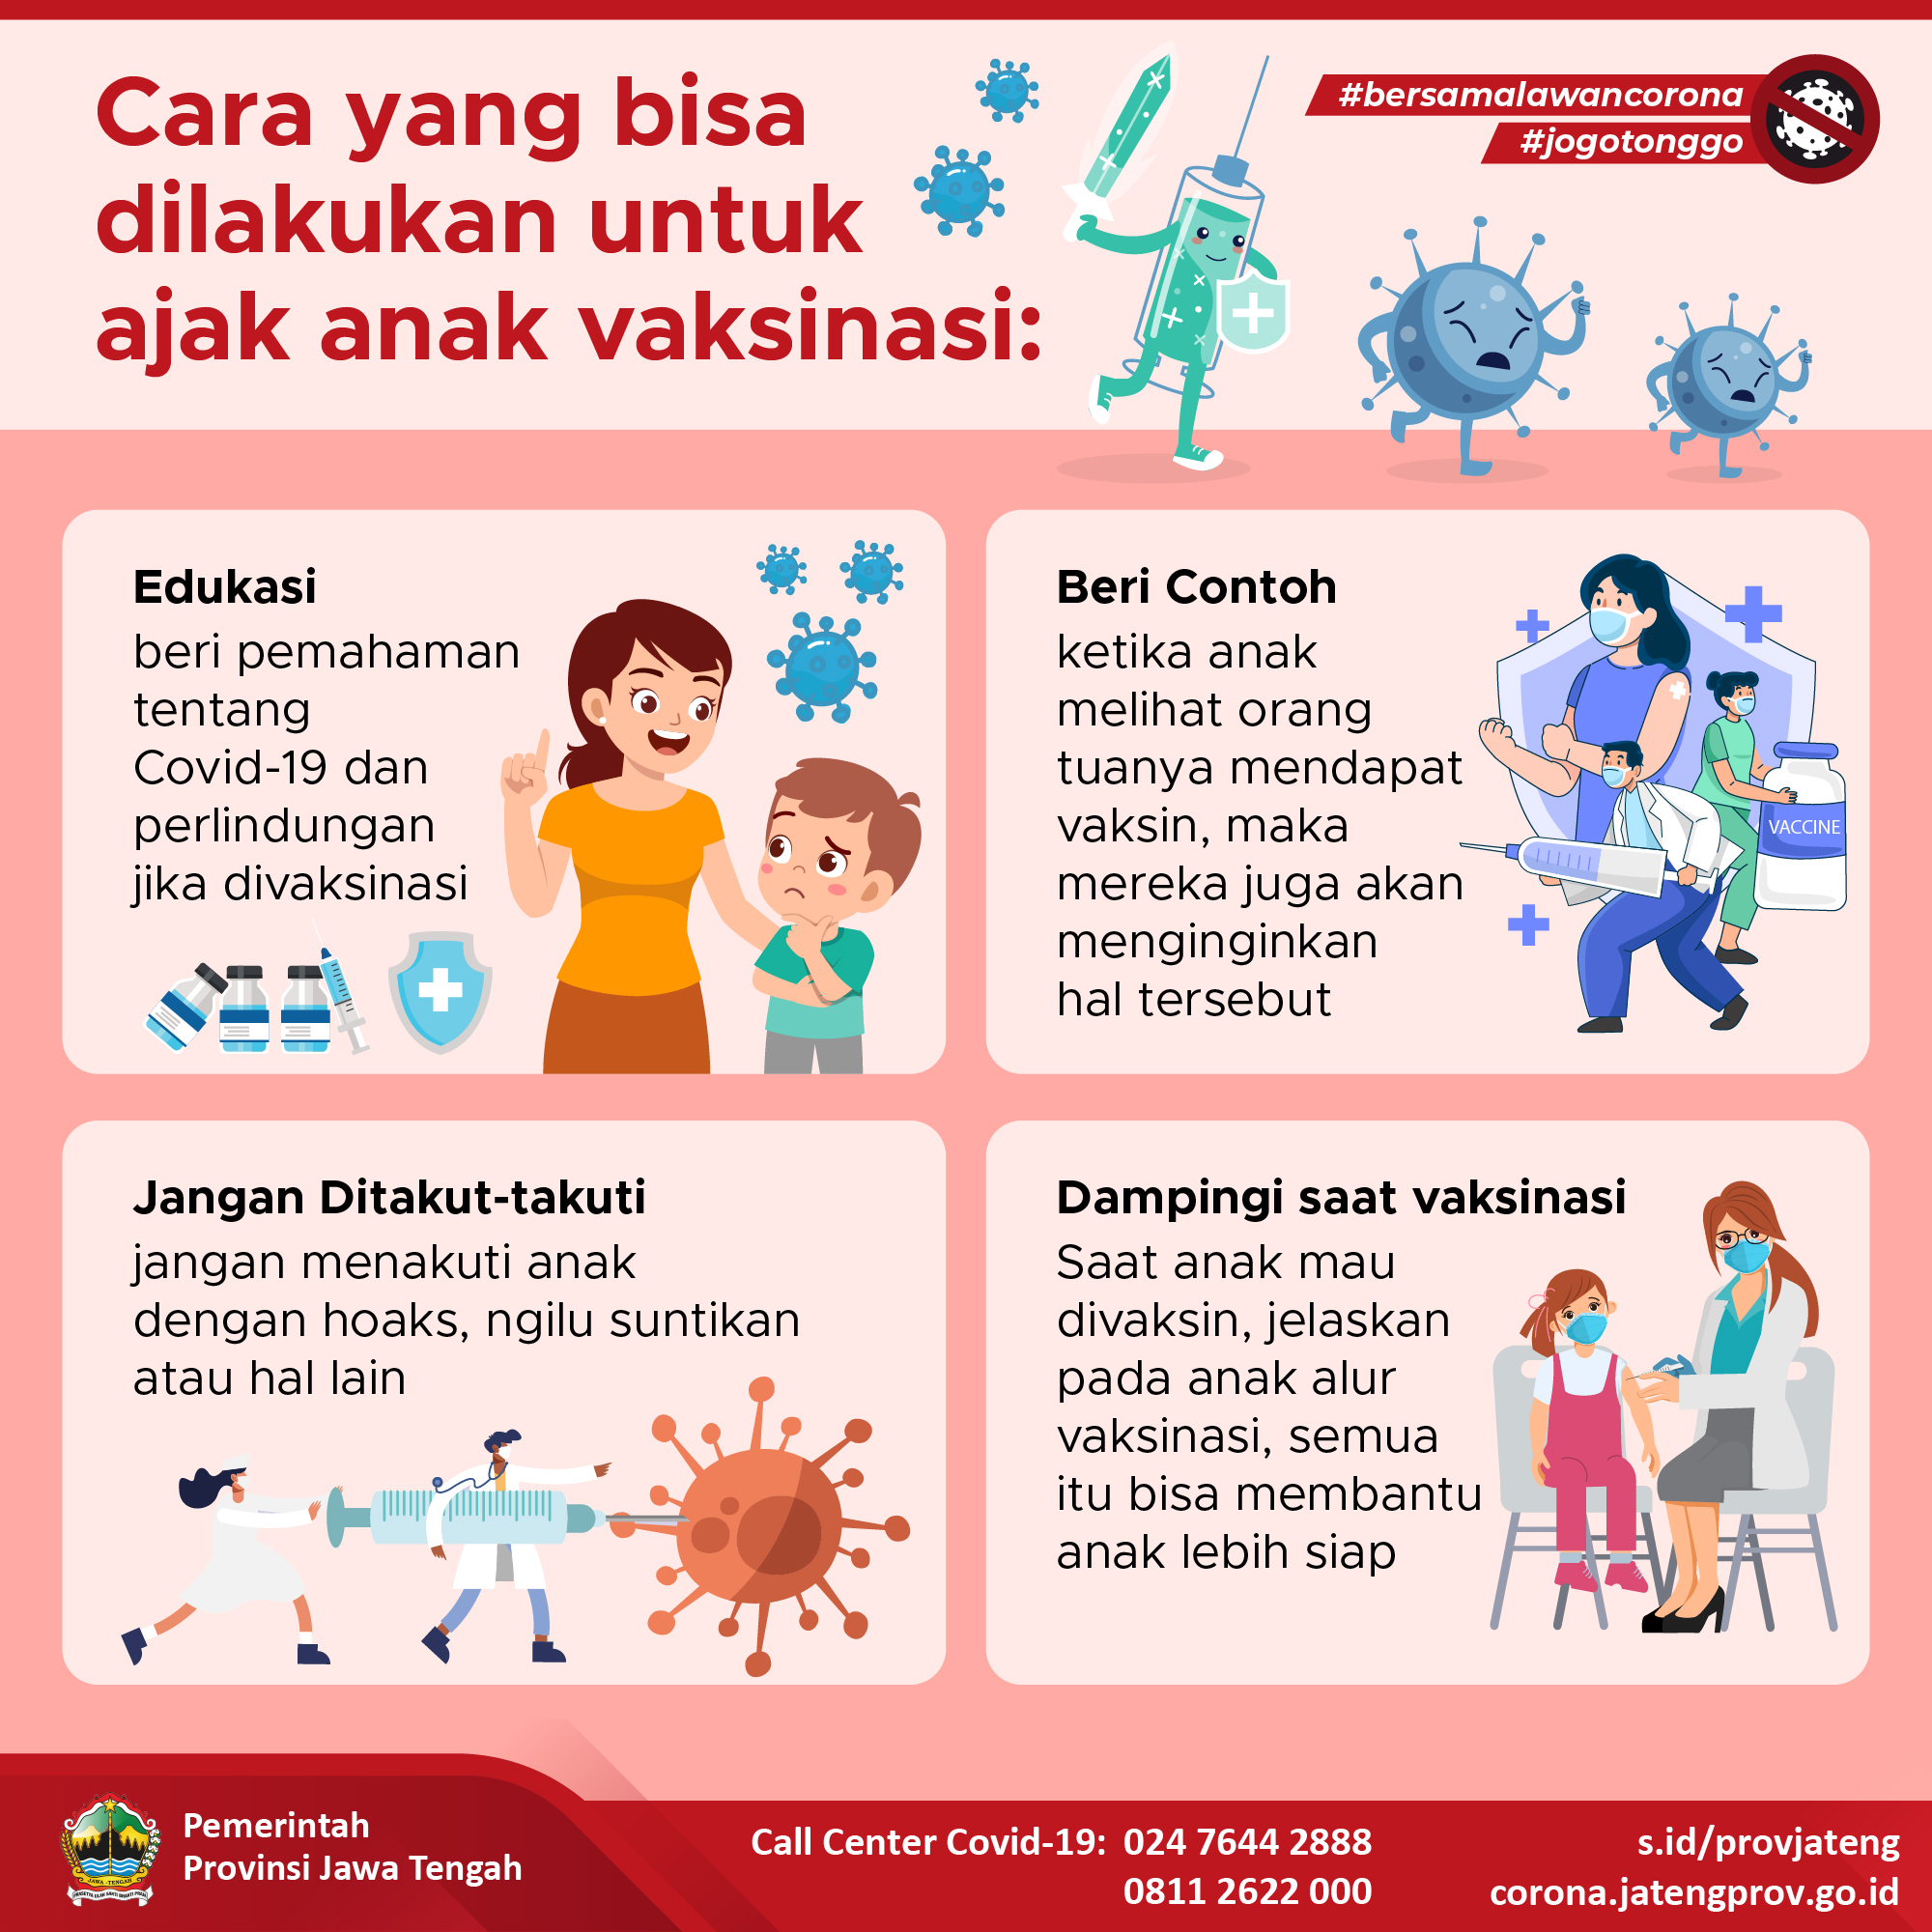 Tips Ajak Anak Vaksinasi